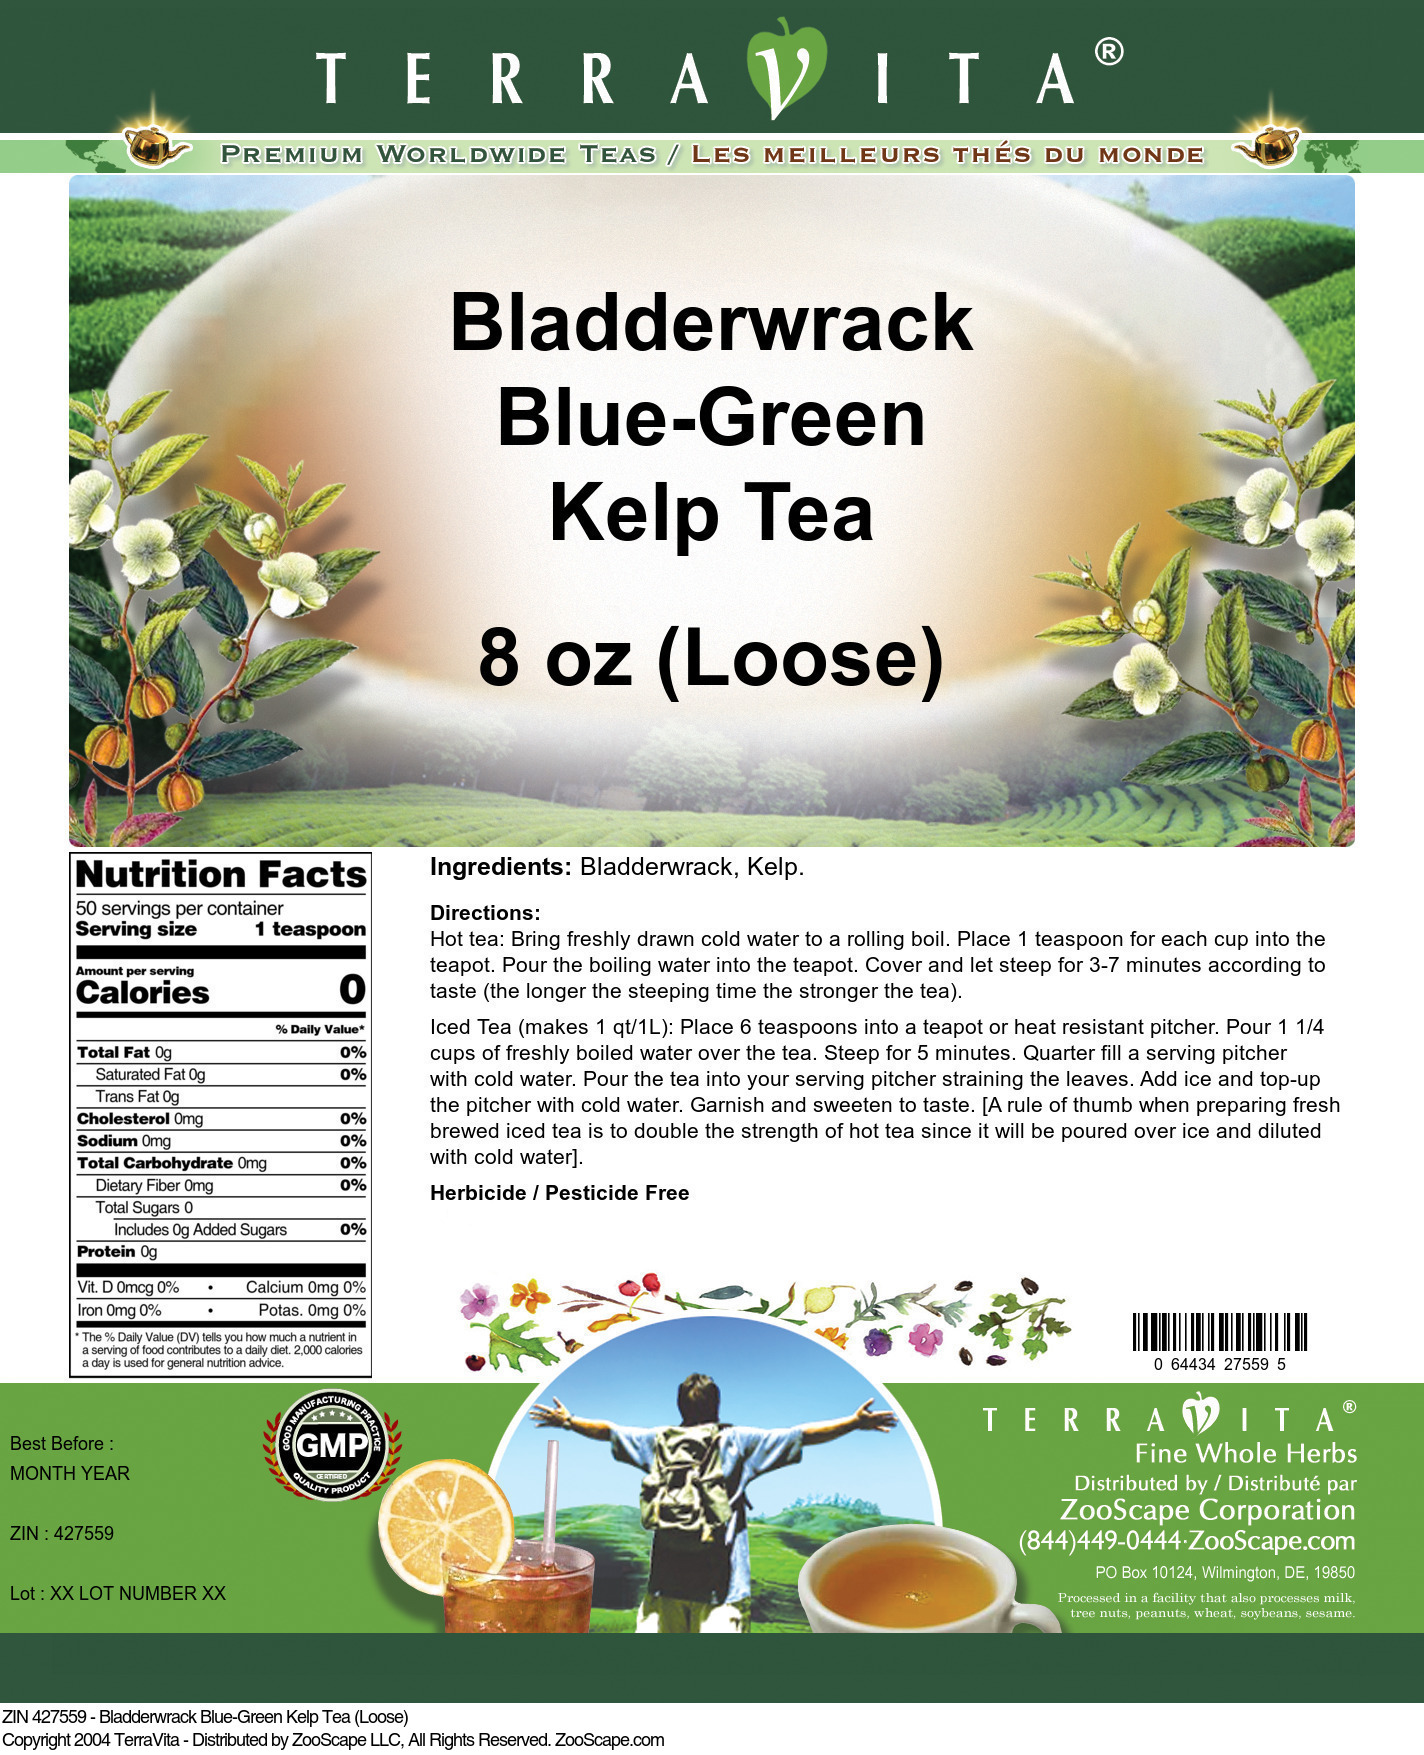 Bladderwrack Blue-Green Kelp Tea (Loose) - Label